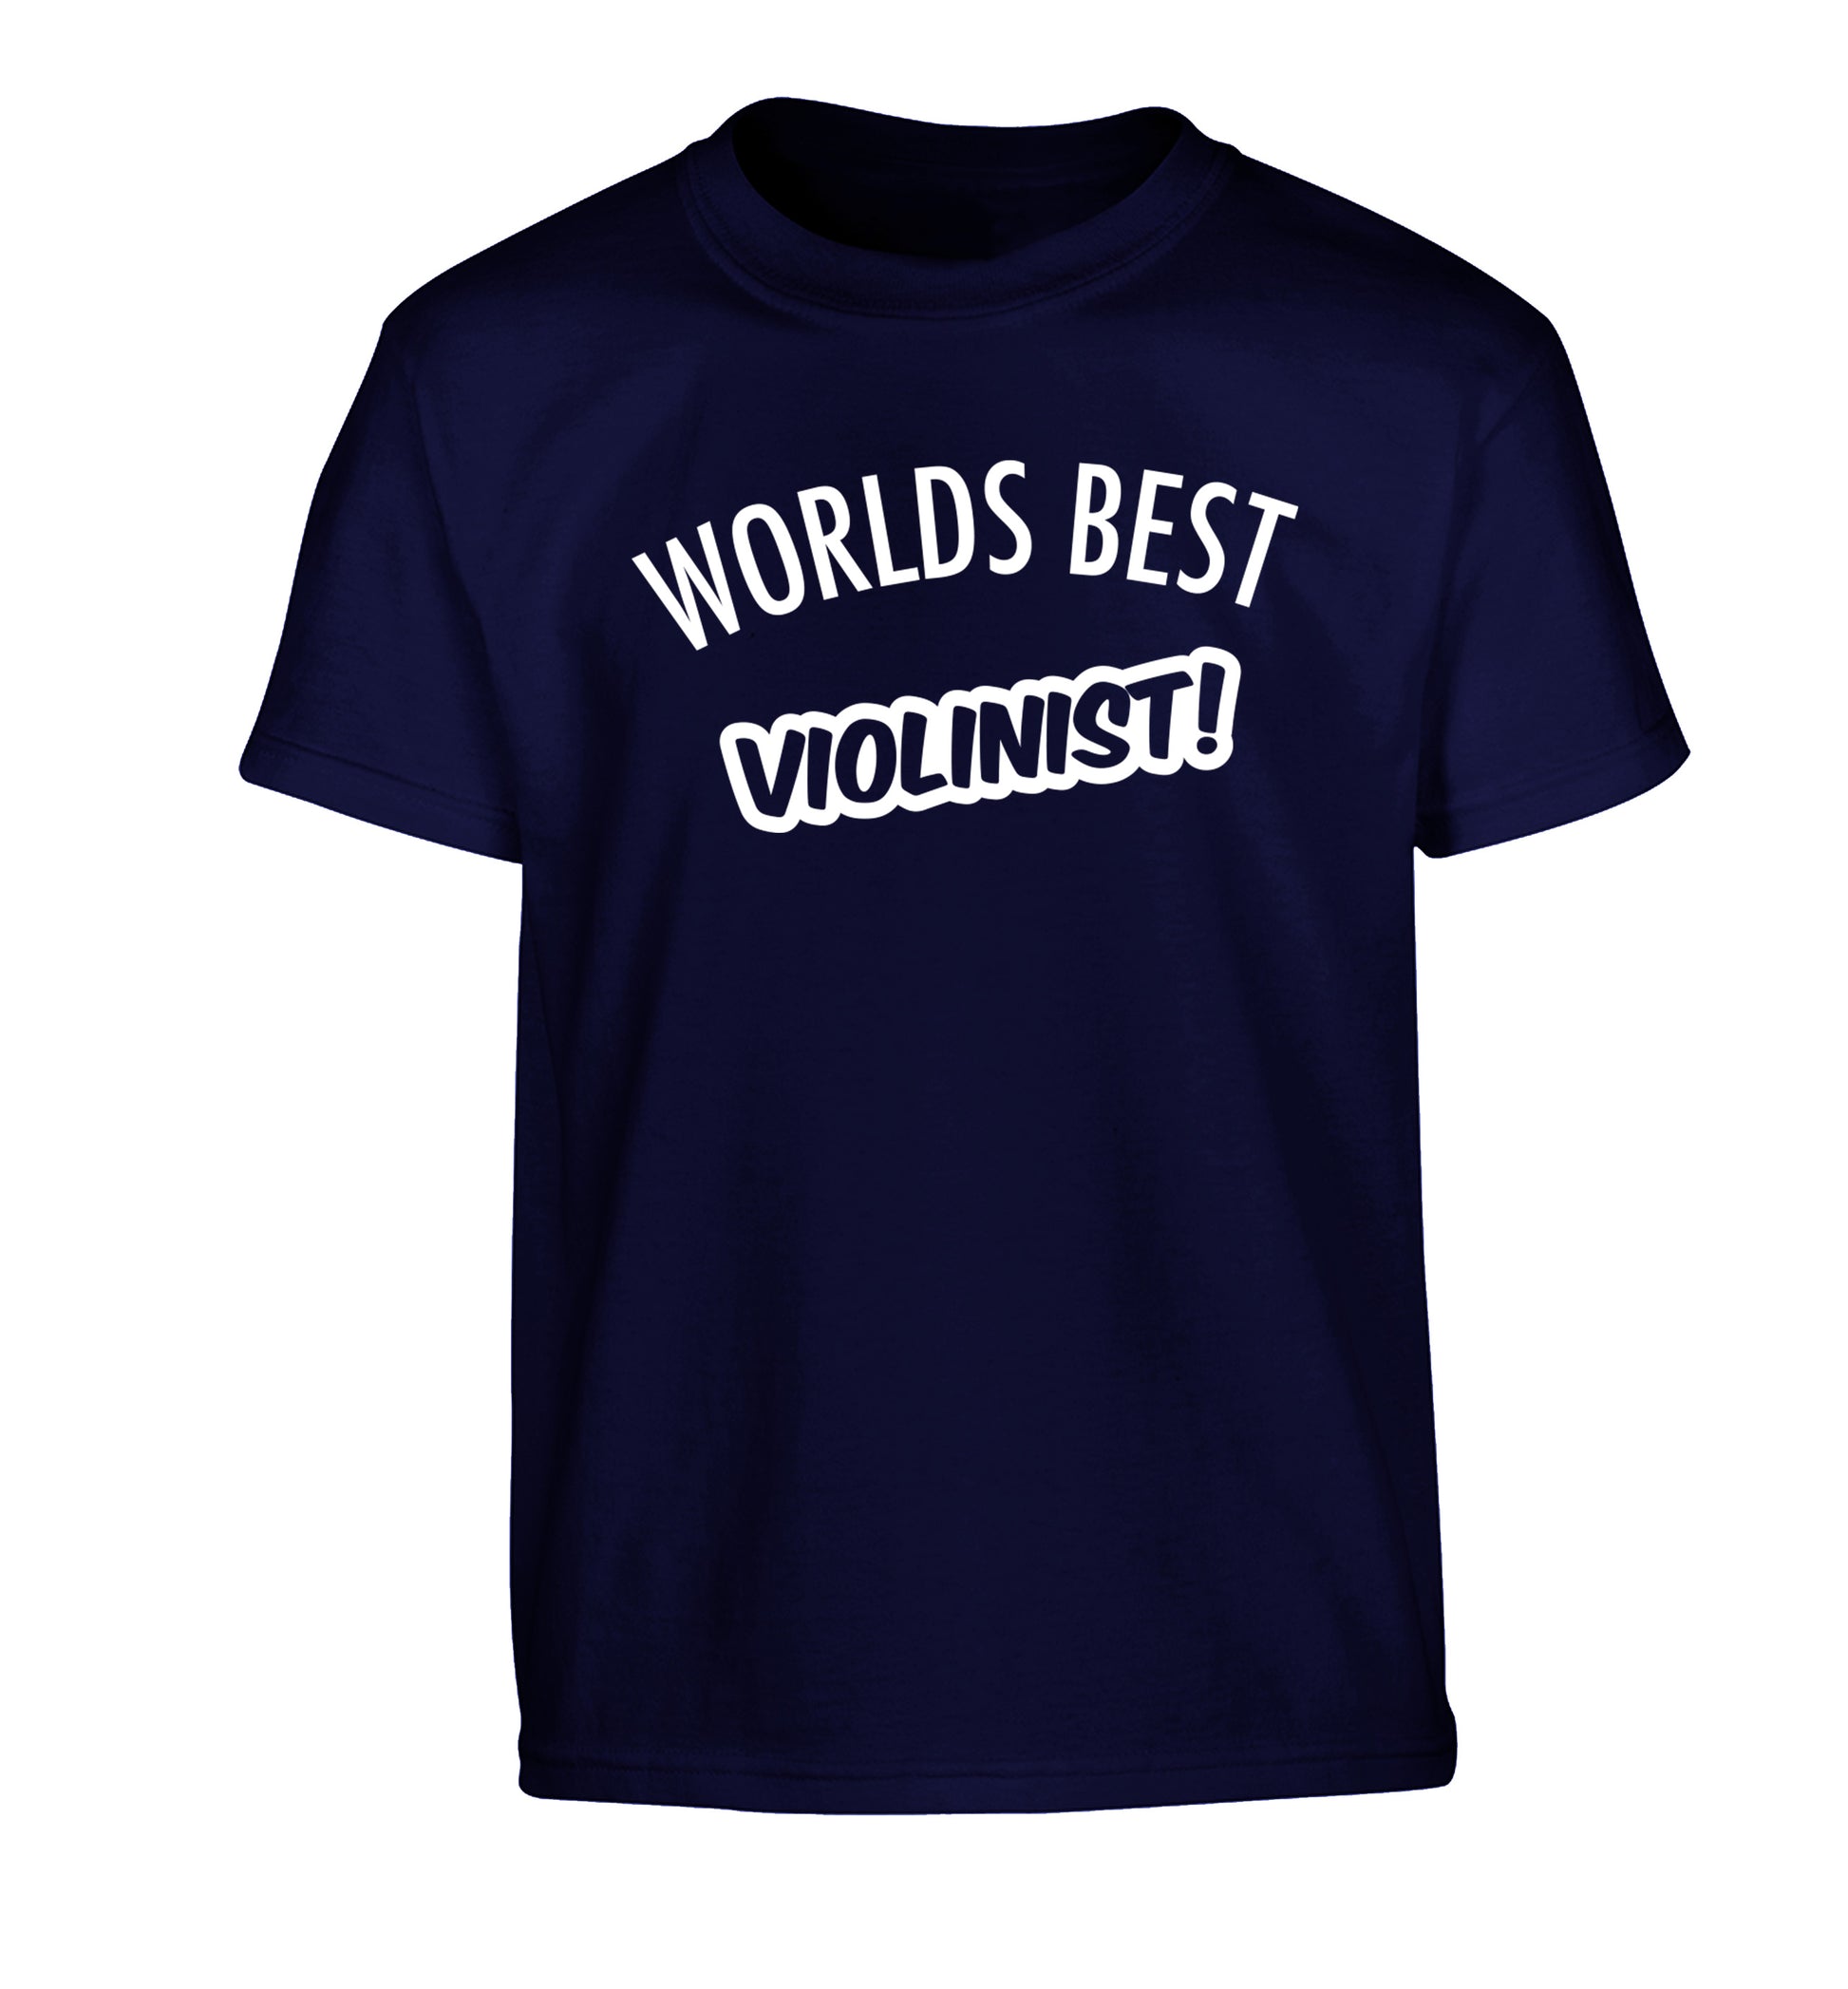 Worlds best violinist Children's navy Tshirt 12-13 Years